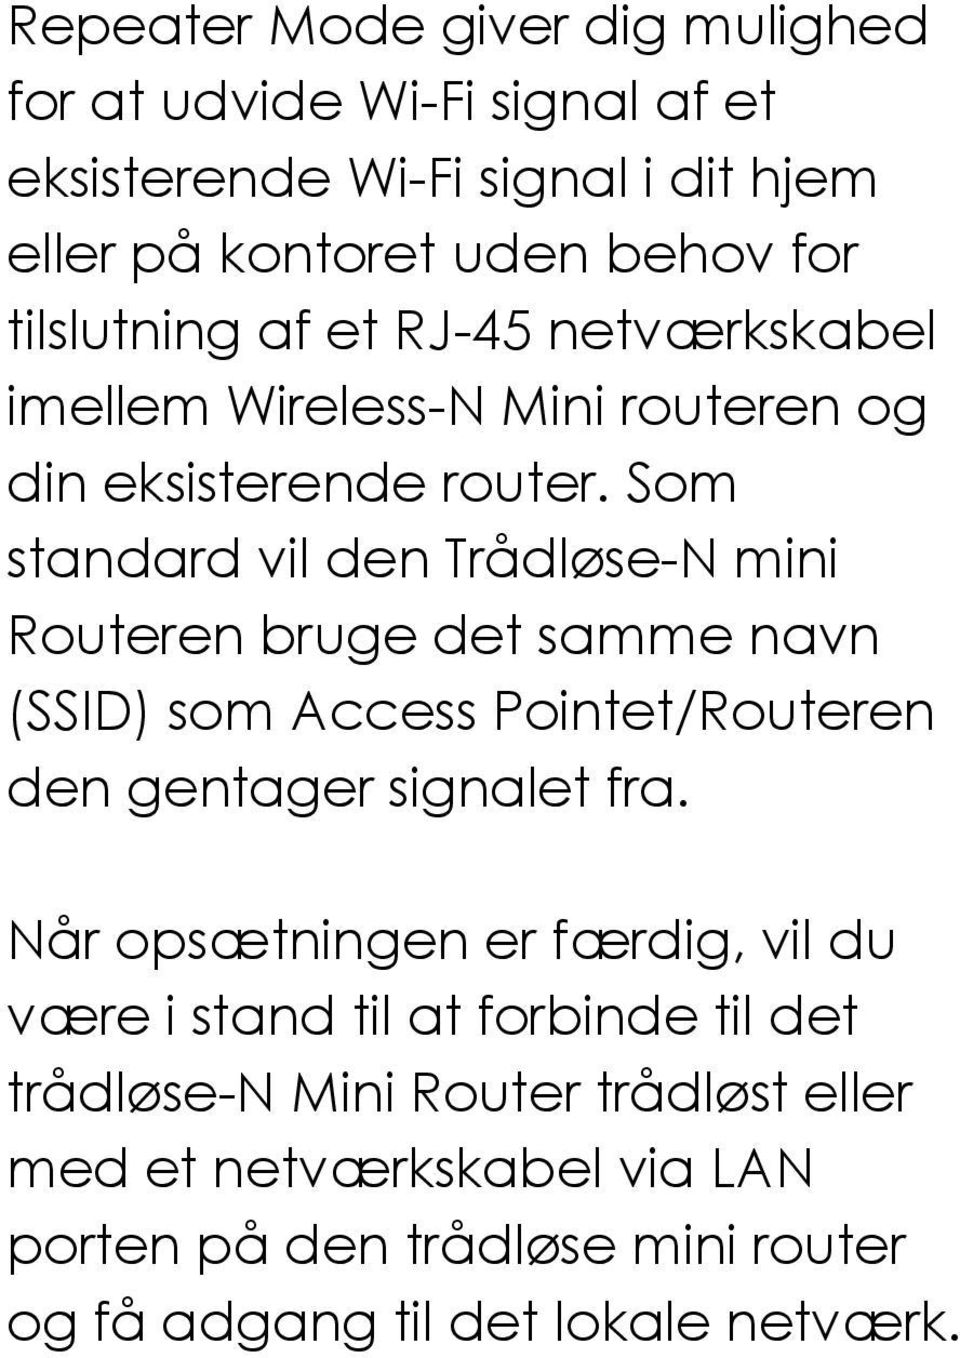 Som standard vil den Trådløse-N mini Routeren bruge det samme navn (SSID) som Access Pointet/Routeren den gentager signalet fra.